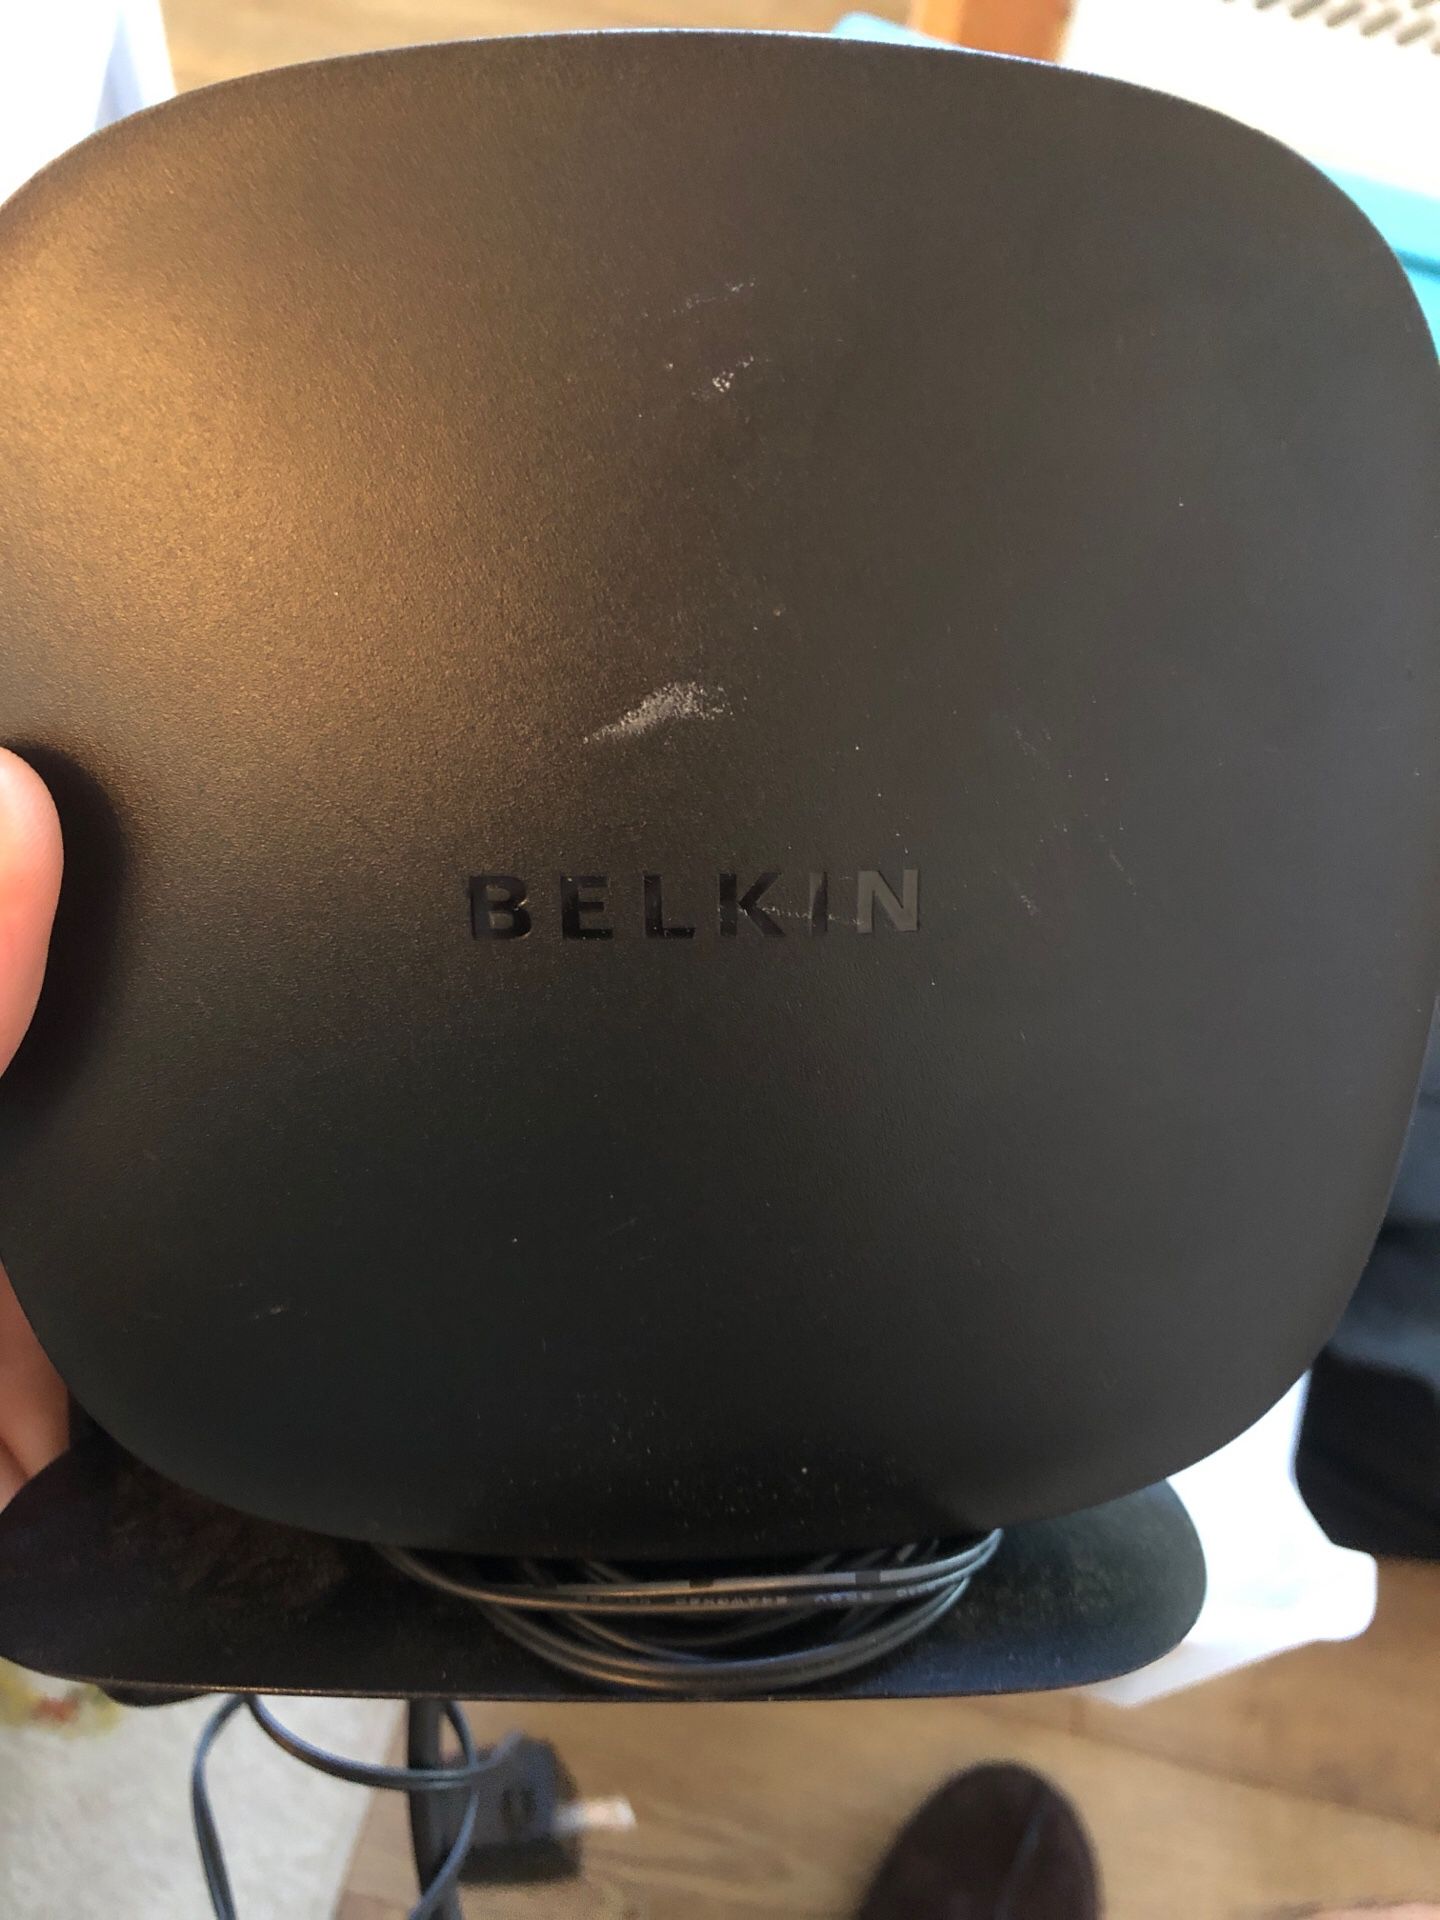 Belkin N150 wireless router